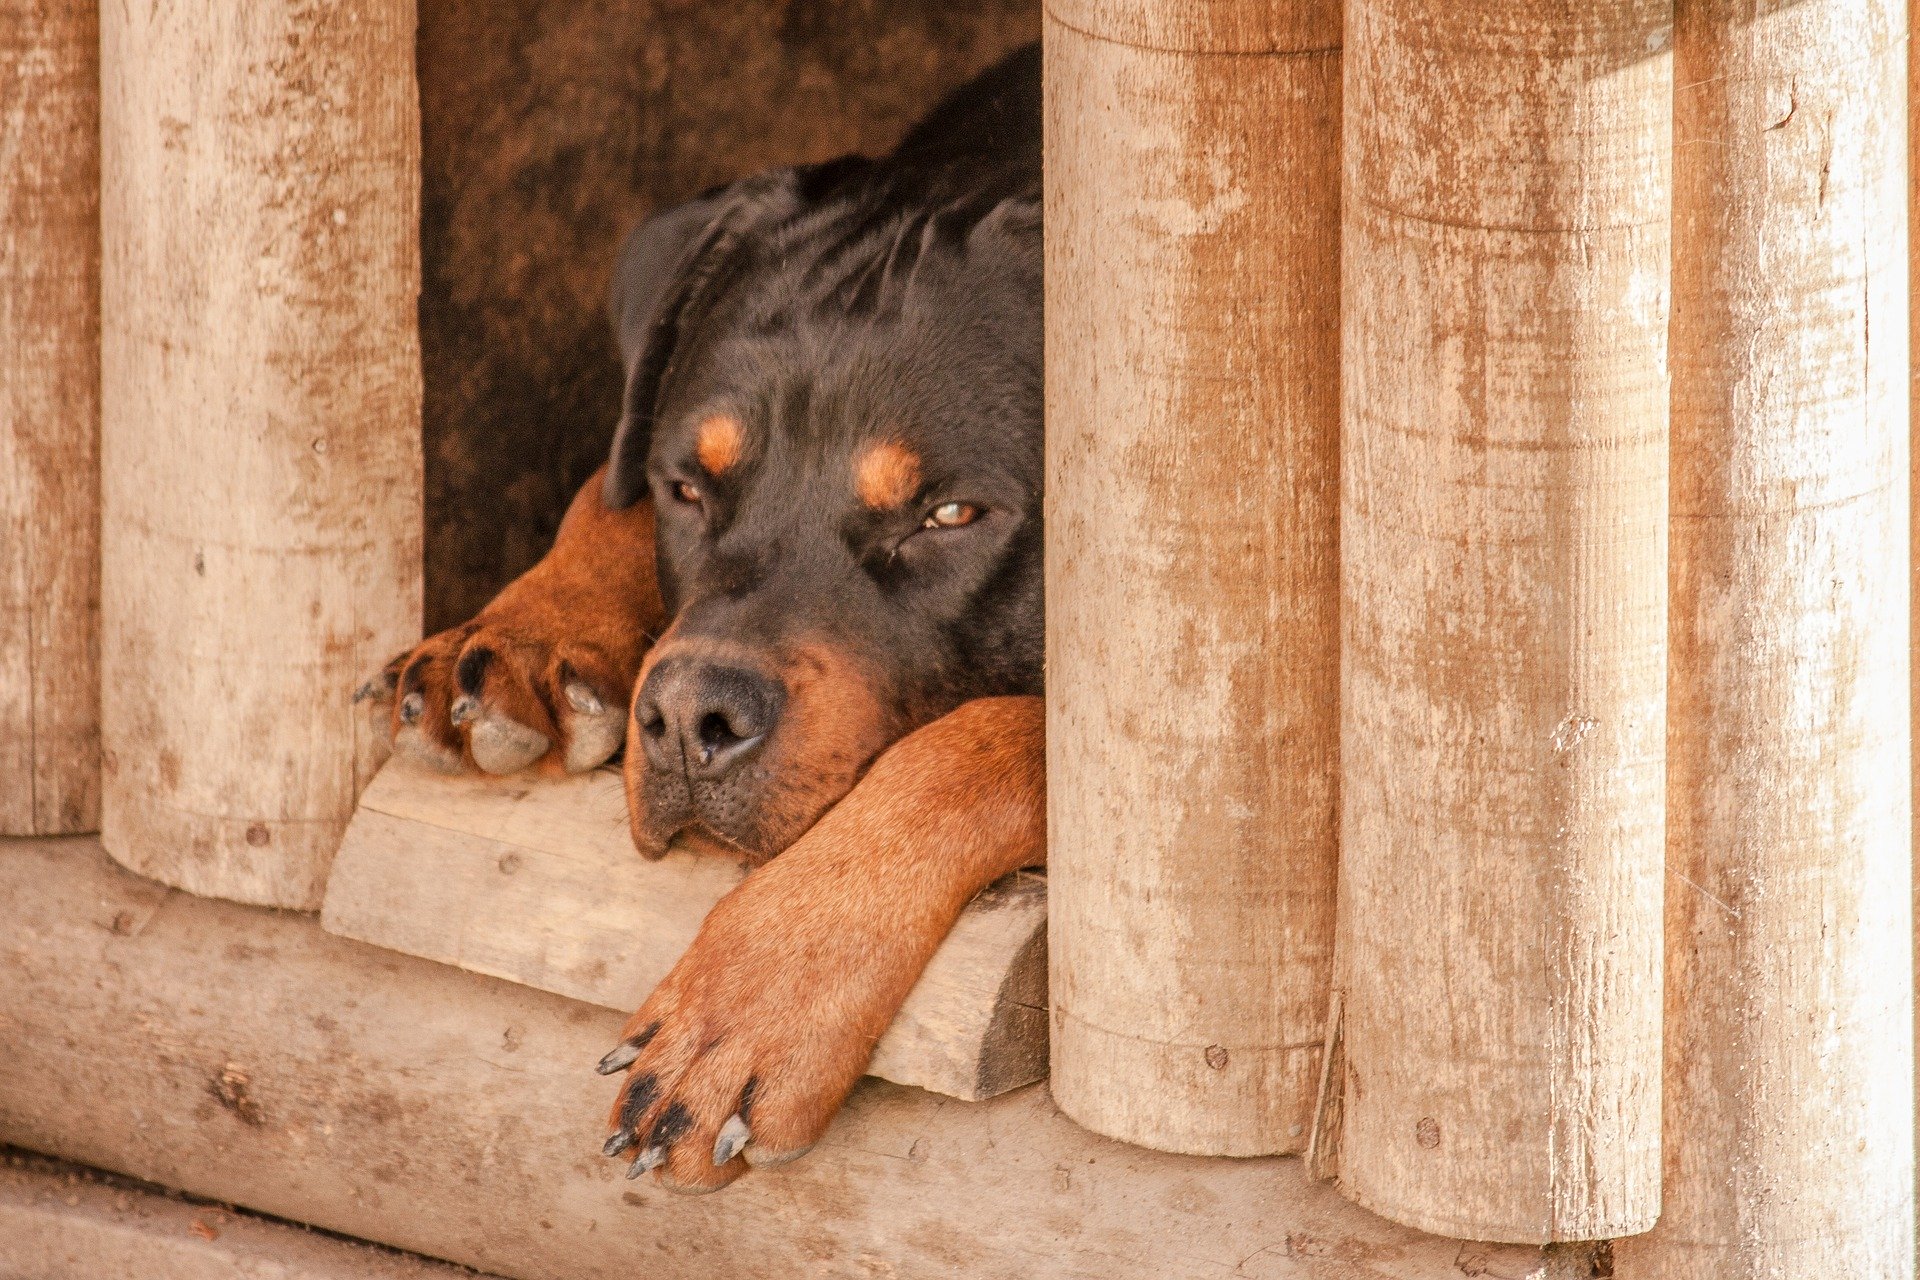 Koera turvakodu ehitamisel tuleb arvestada koera vajadusi. See peab olema mugav, soe ja hubane.